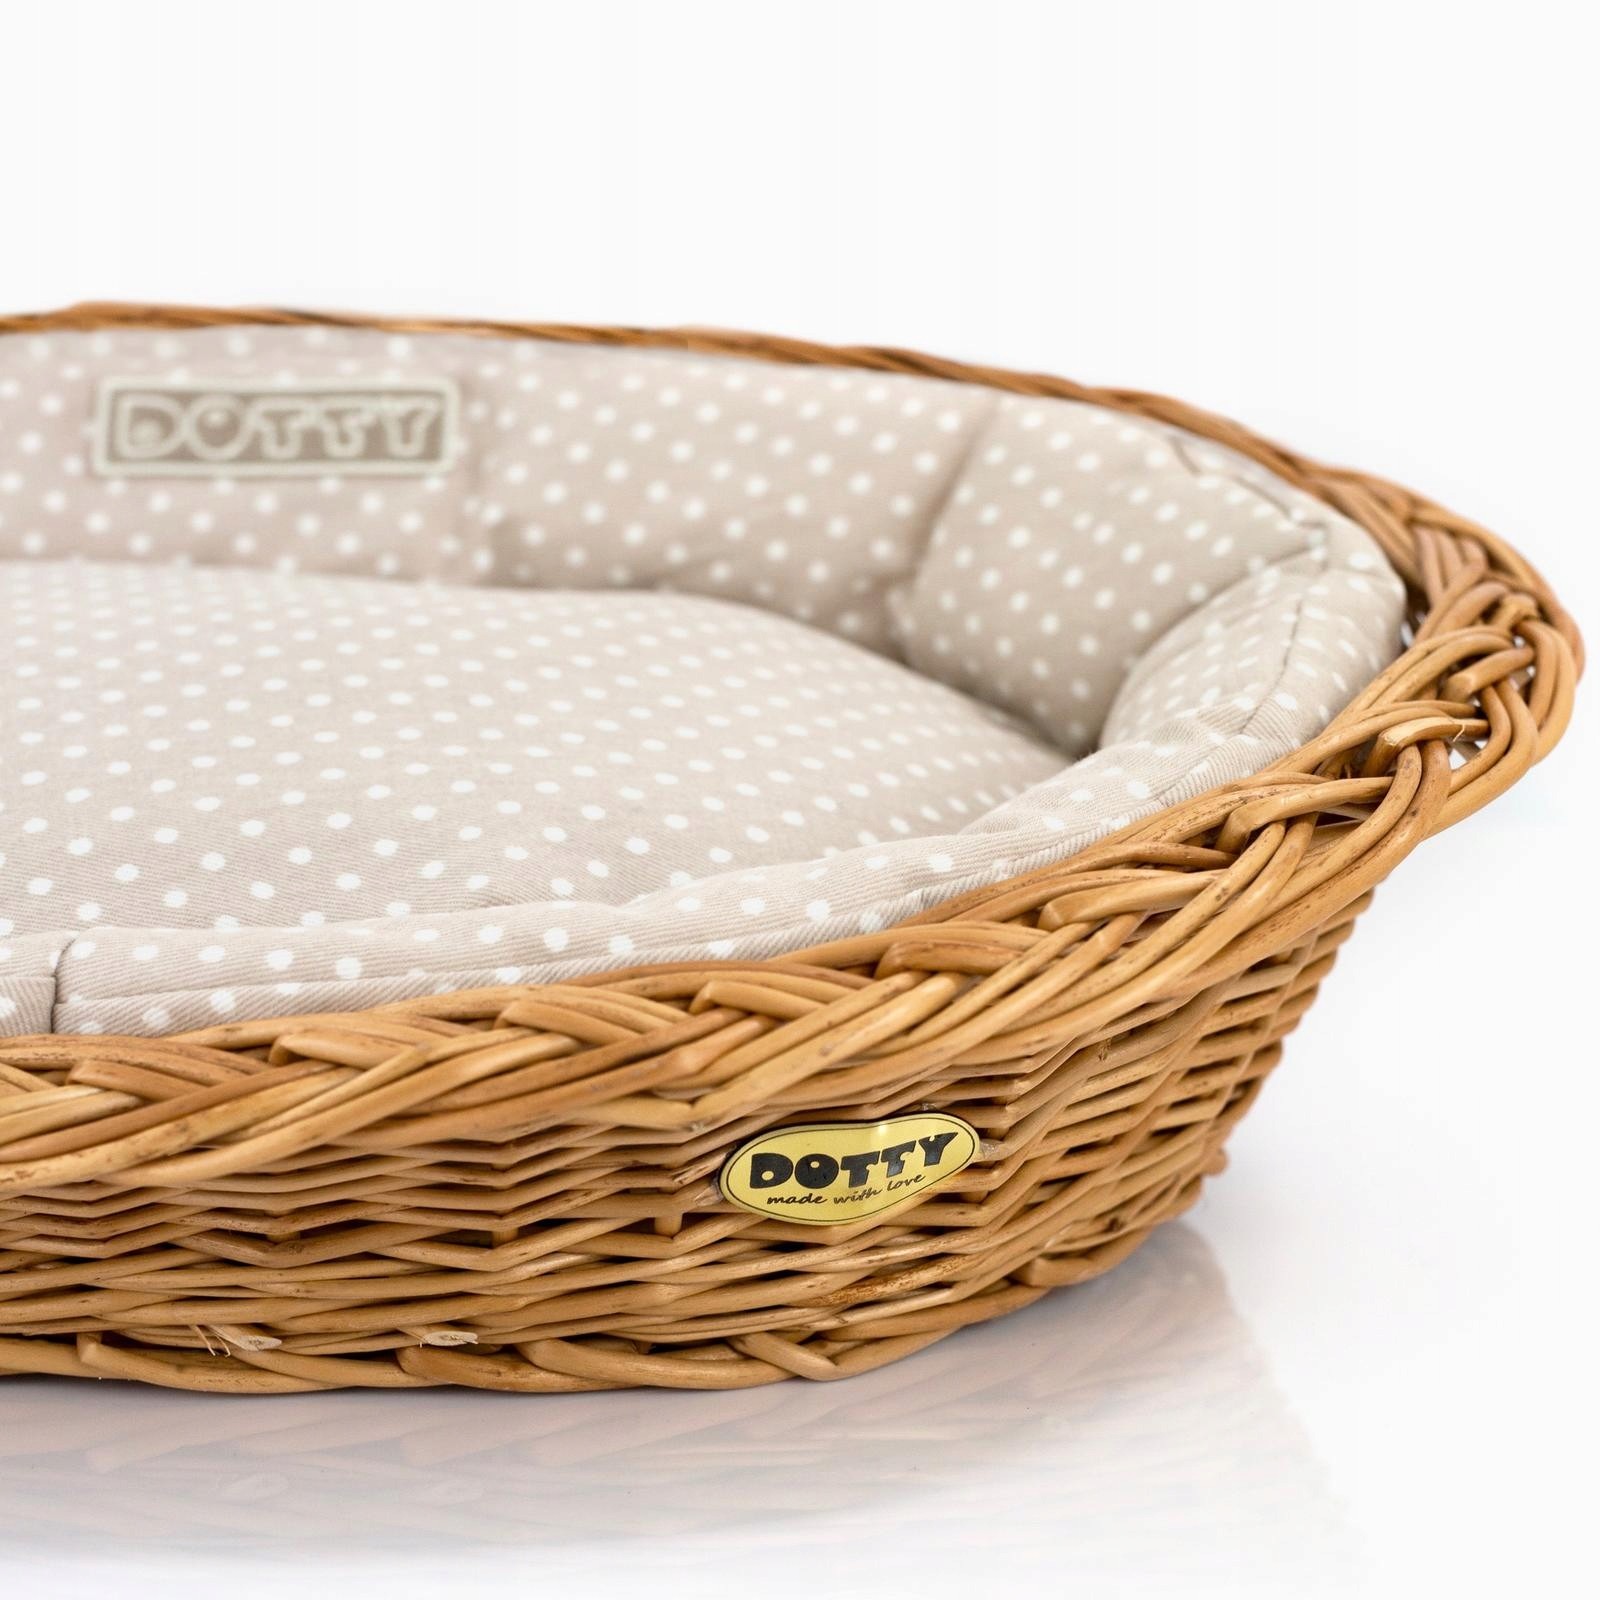 pelíšek pro psa v přírodním proutěném košíku s polštářkem ze 100% bavlny